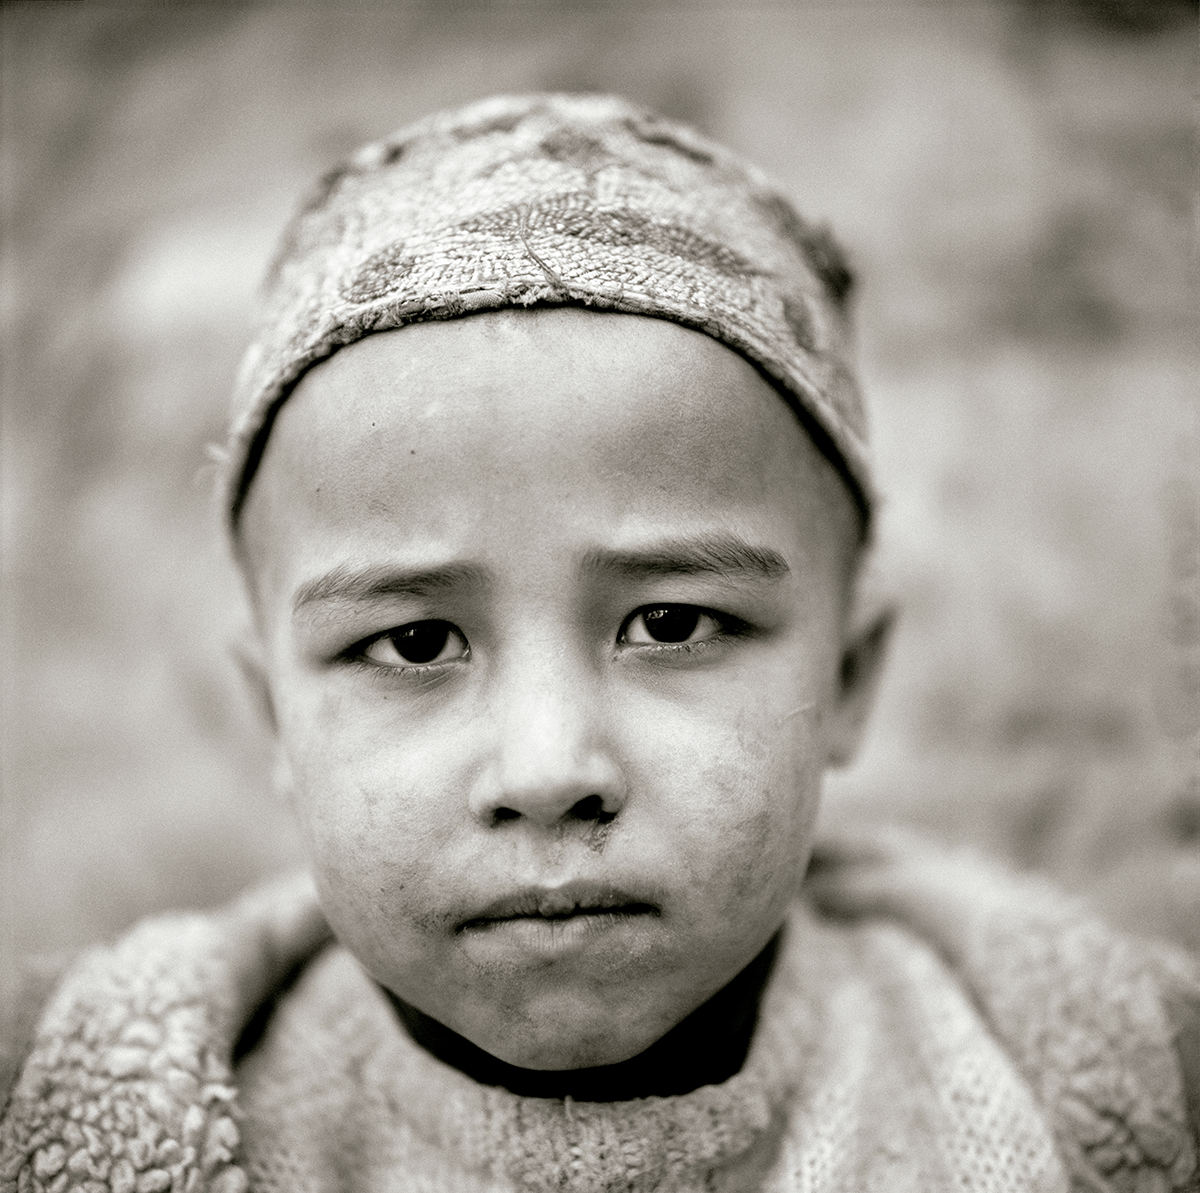 Afghan boy born in exile © Fazal Sheikh, 2020 © Fundación MAPFRE COLLECTIONS